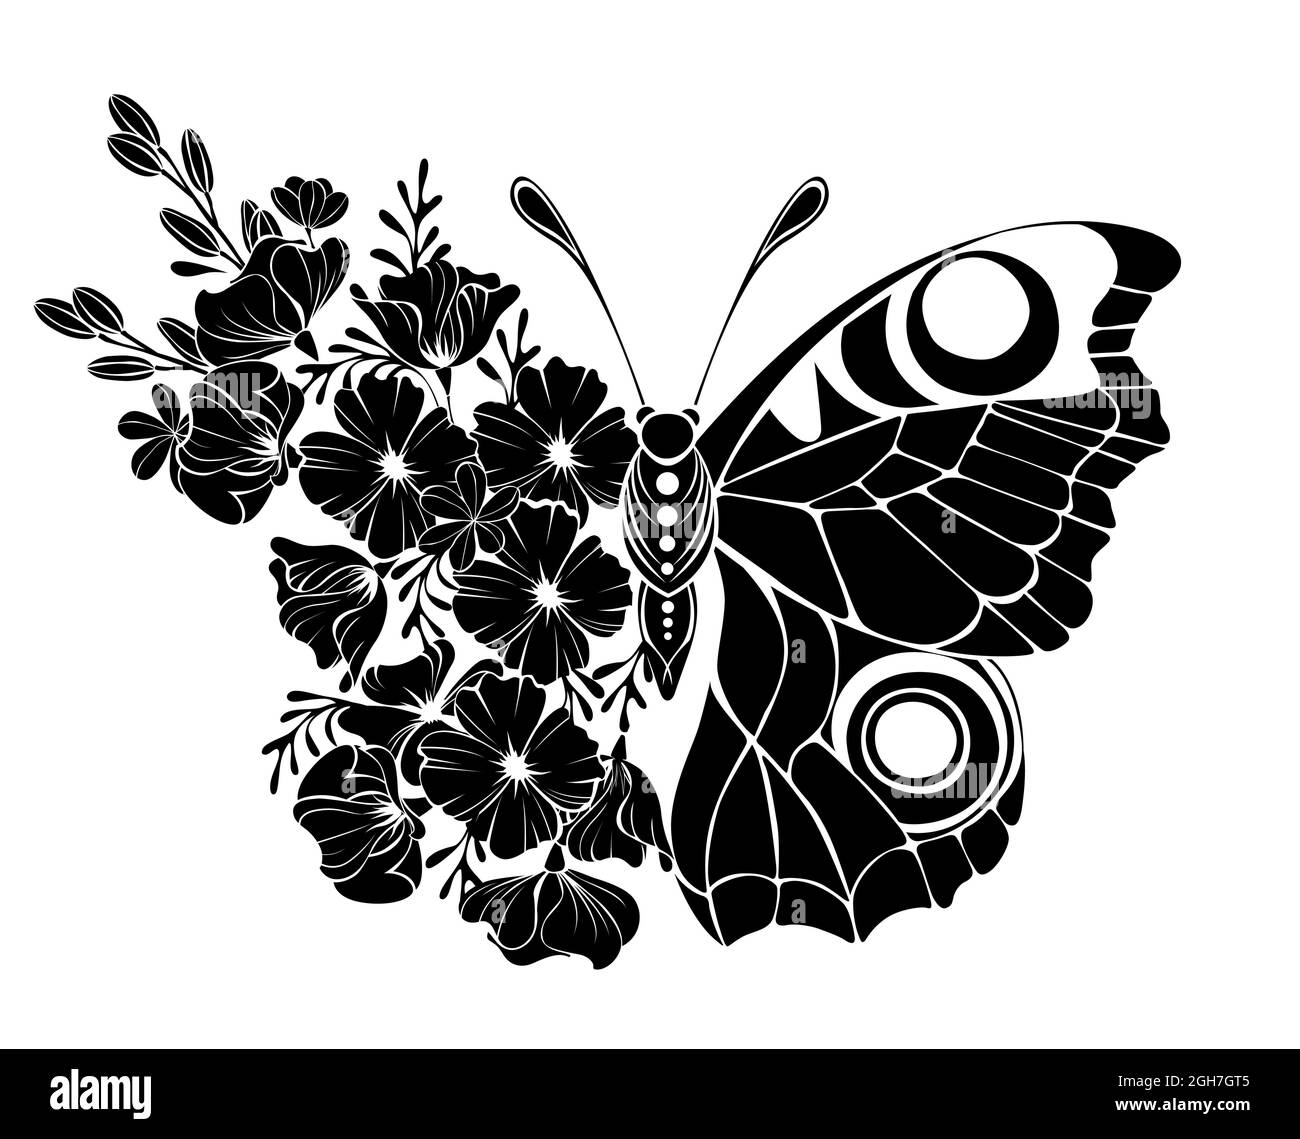 Flor negra Imágenes de stock en blanco y negro - Alamy